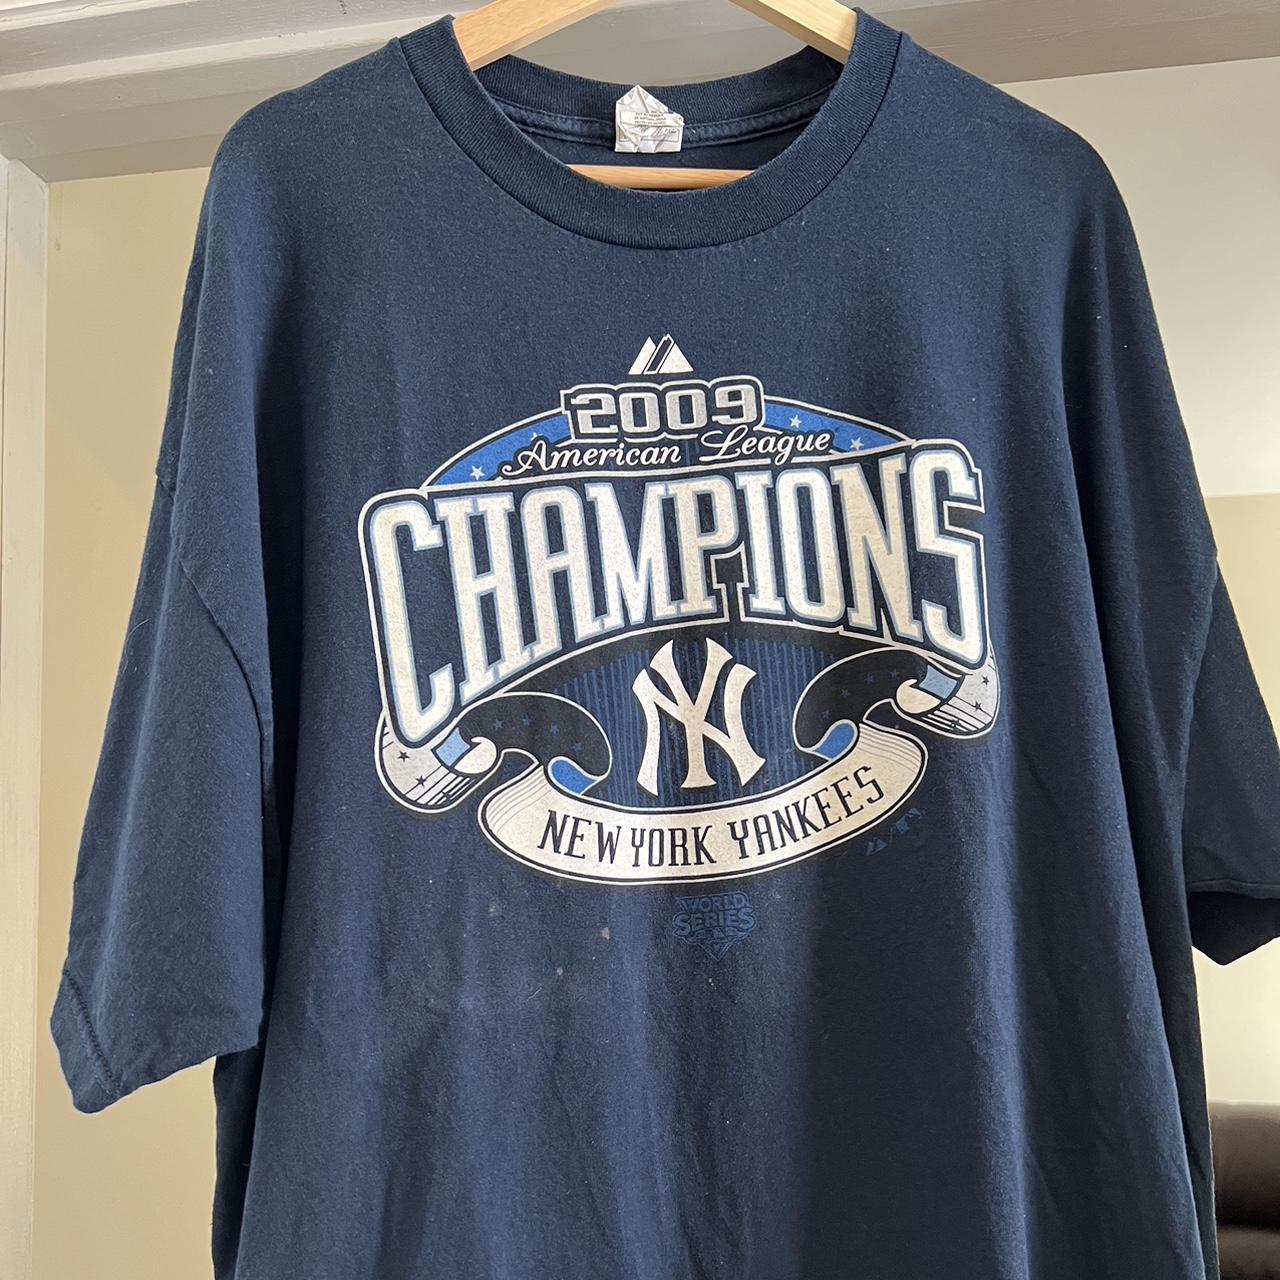 2009 NY Yankees al Champions Shirt 